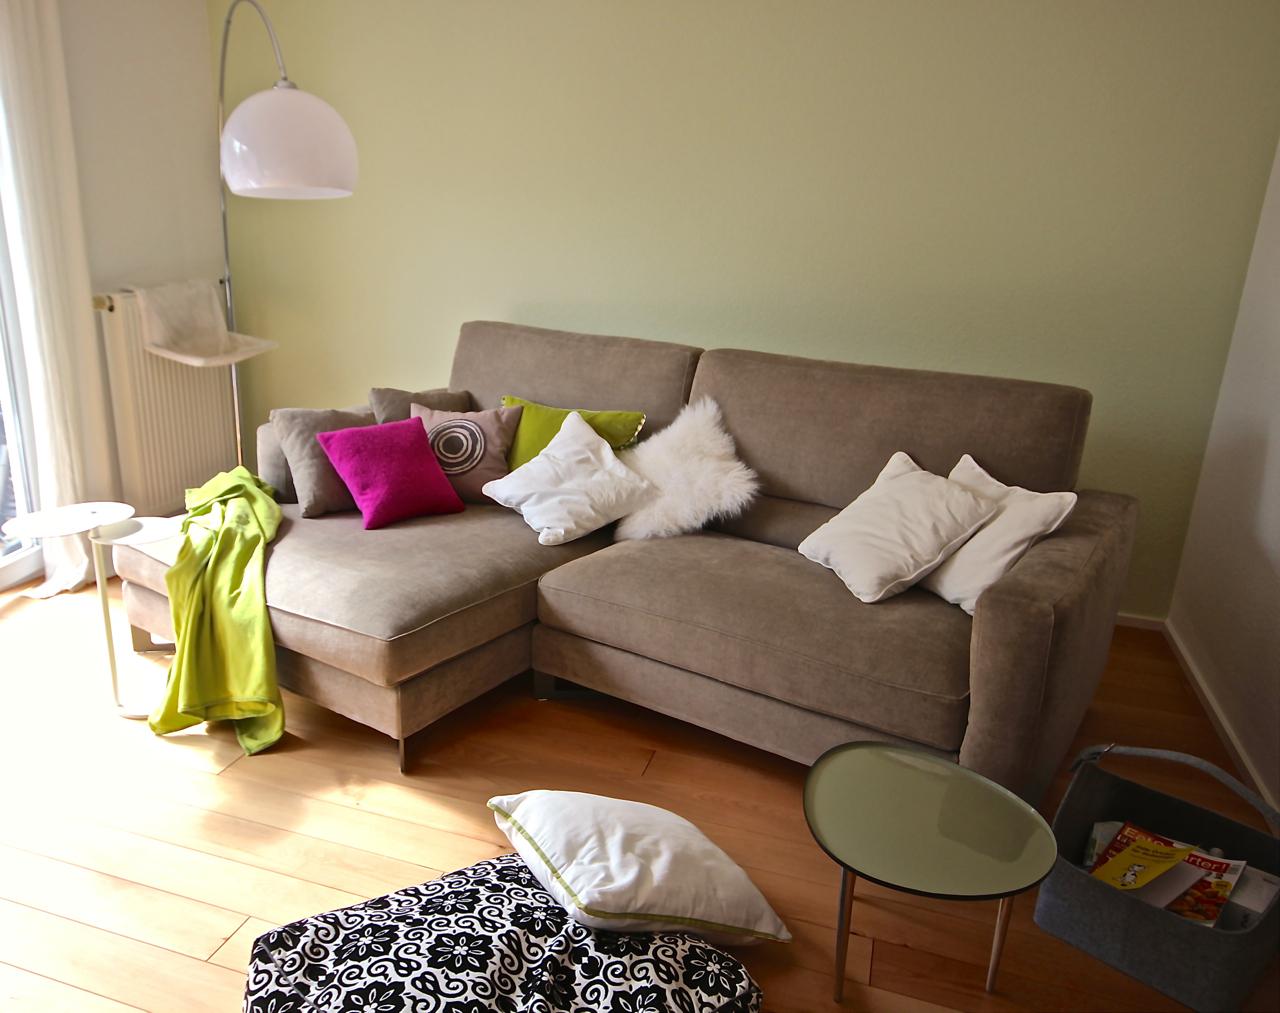 Gemütliches Sofa vor grüner Wand #couchtisch #dielenboden #wandfarbe #ecksofa #stehlampe #sofakissen #grünewandfarbe ©Foto Gerardina Pantanella